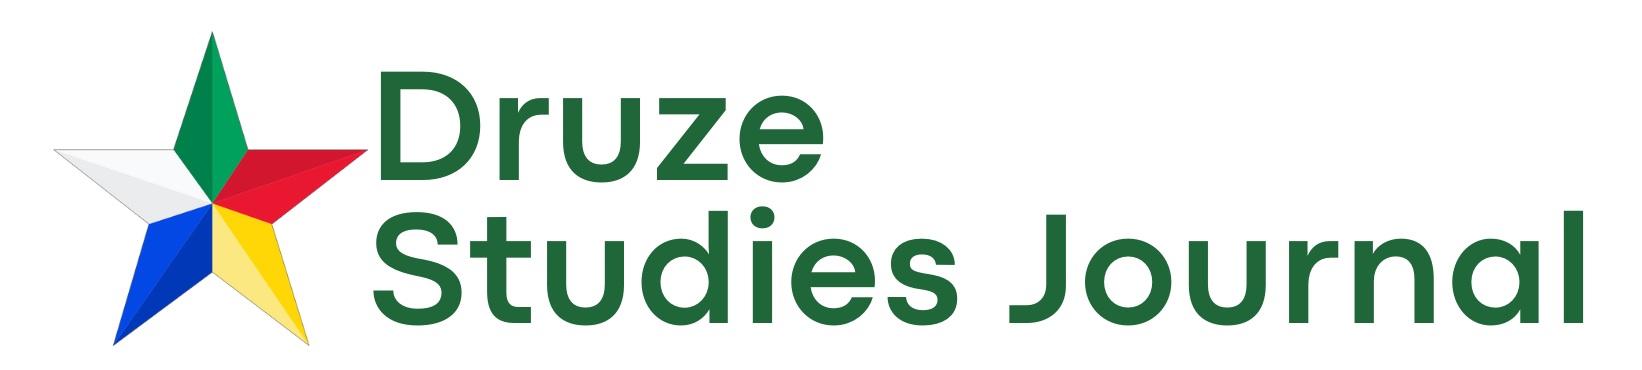 Druze Studies Journal logo with the Druze star